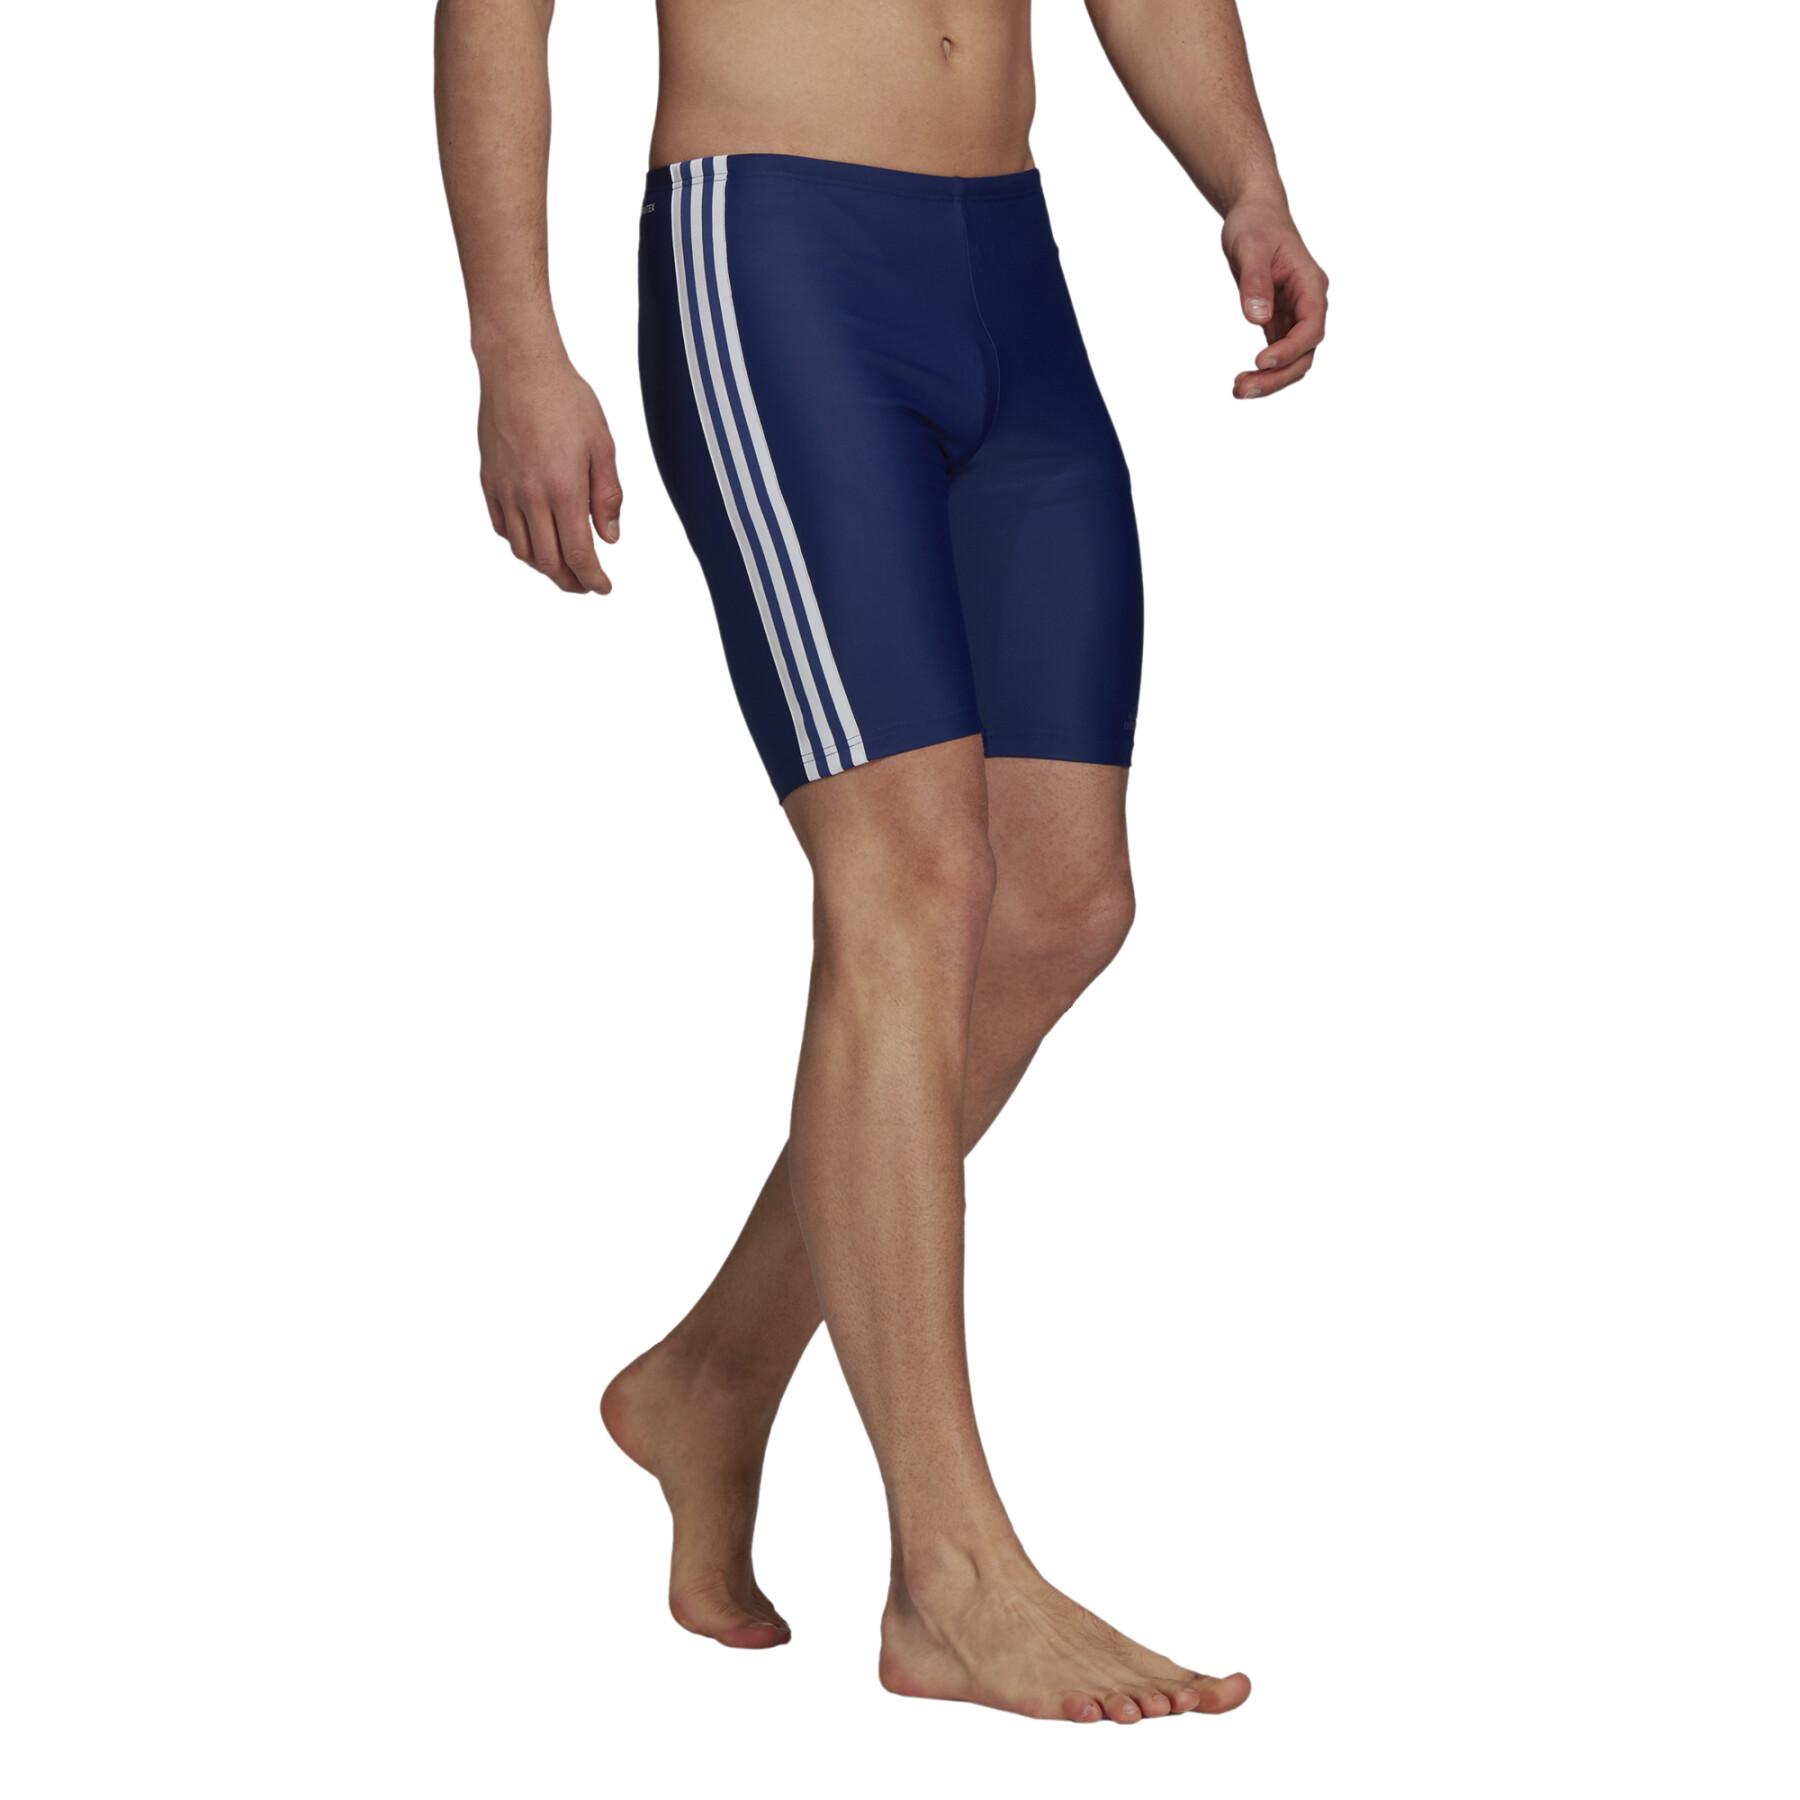 Jammer de natation adidas 3-Stripes